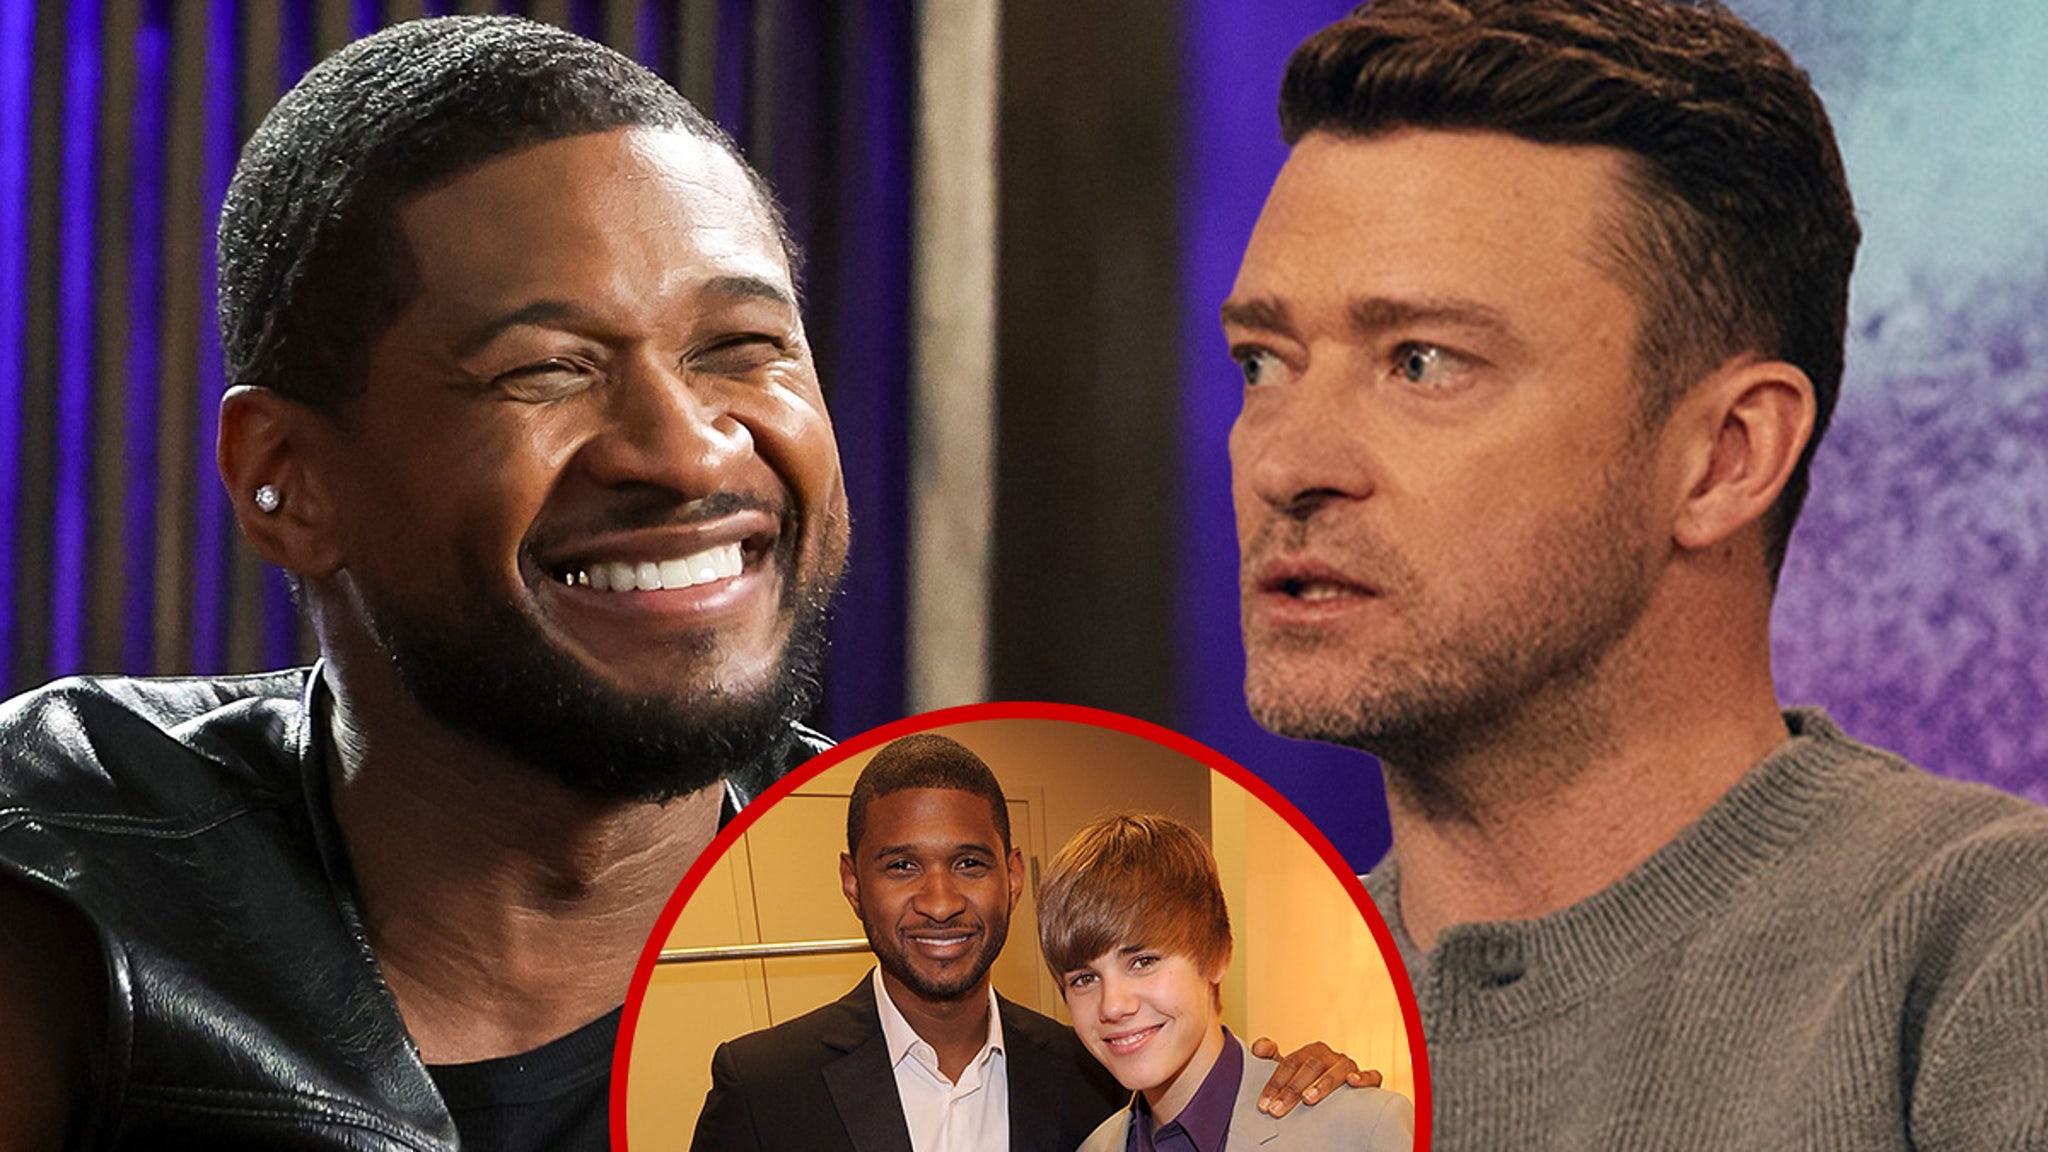 Usher Says He Won 'Bidding War' with Justin Timberlake for Justin Bieber #JustinBieber